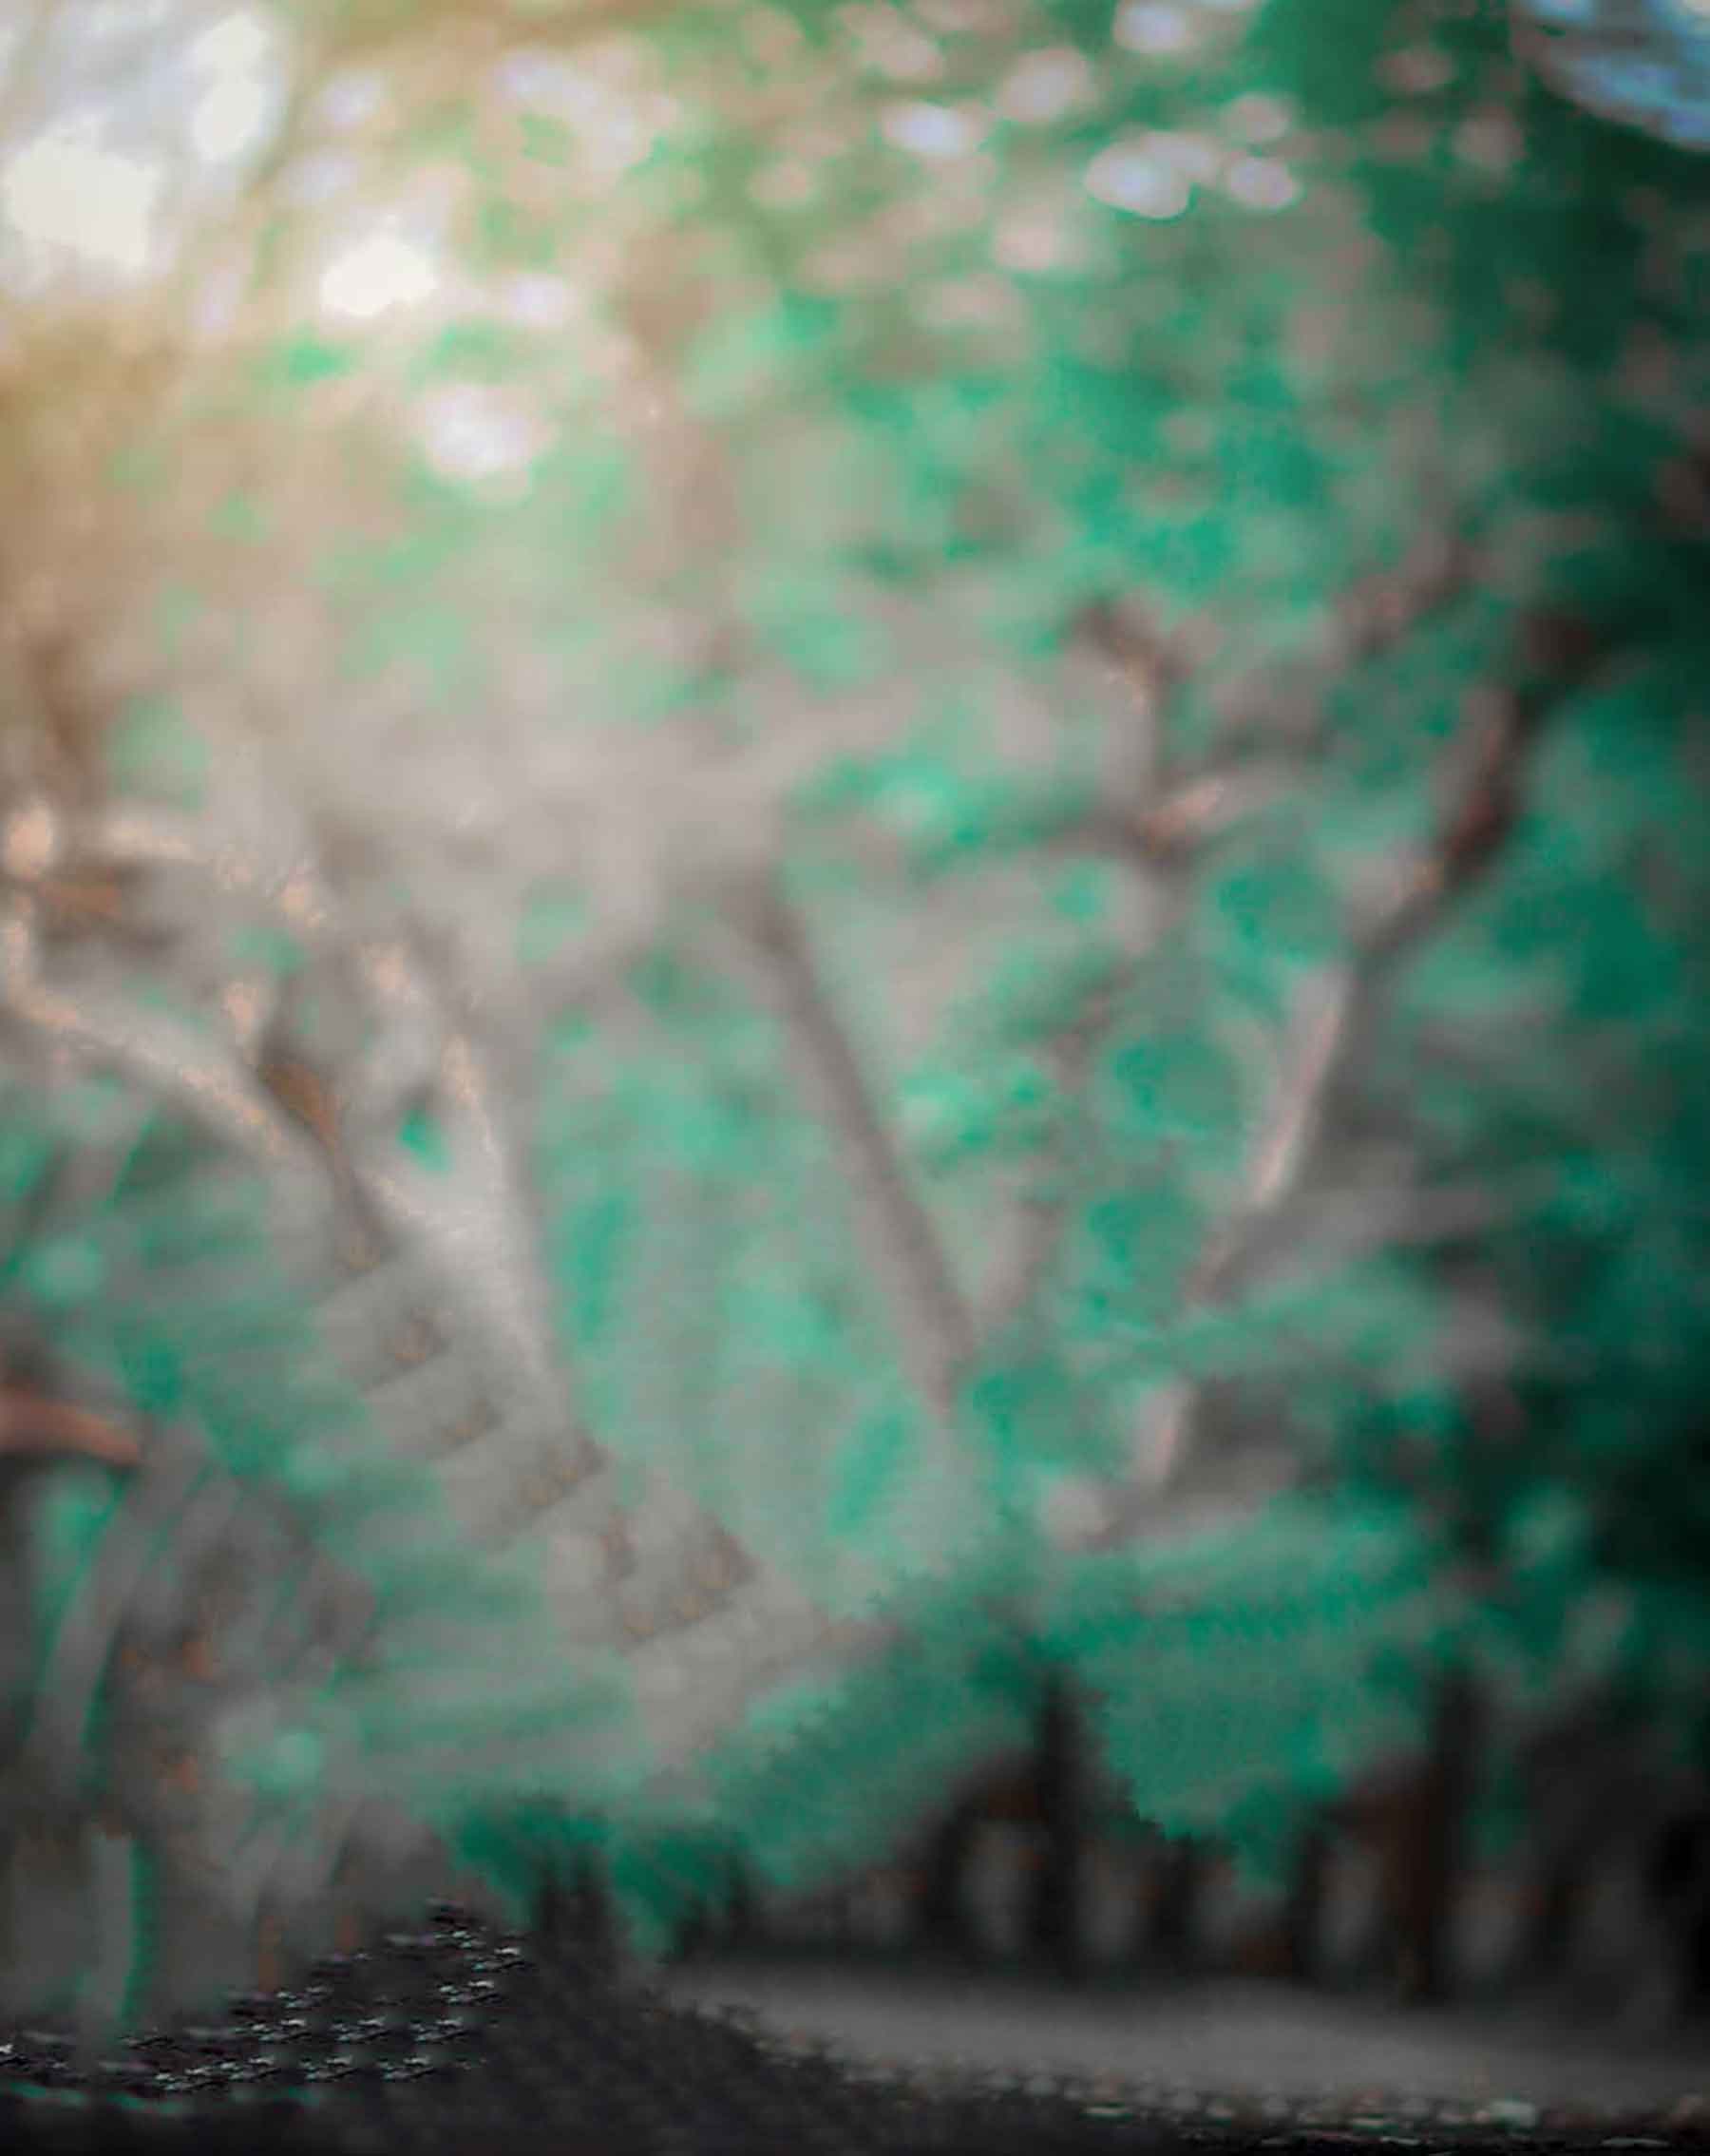 Độ sáng tối nền xanh (Dark tone green background): Bao gồm màu xanh đậm và độ sáng thấp, độ sáng tối nền xanh là một lựa chọn tuyệt vời để tạo ra bức ảnh cá nhân hoặc sử dụng cho công việc. Hãy đến và khám phá một loạt những bức ảnh có nền xanh tối độc đáo, chắc chắn sẽ đem lại cho bạn những trải nghiệm thú vị.